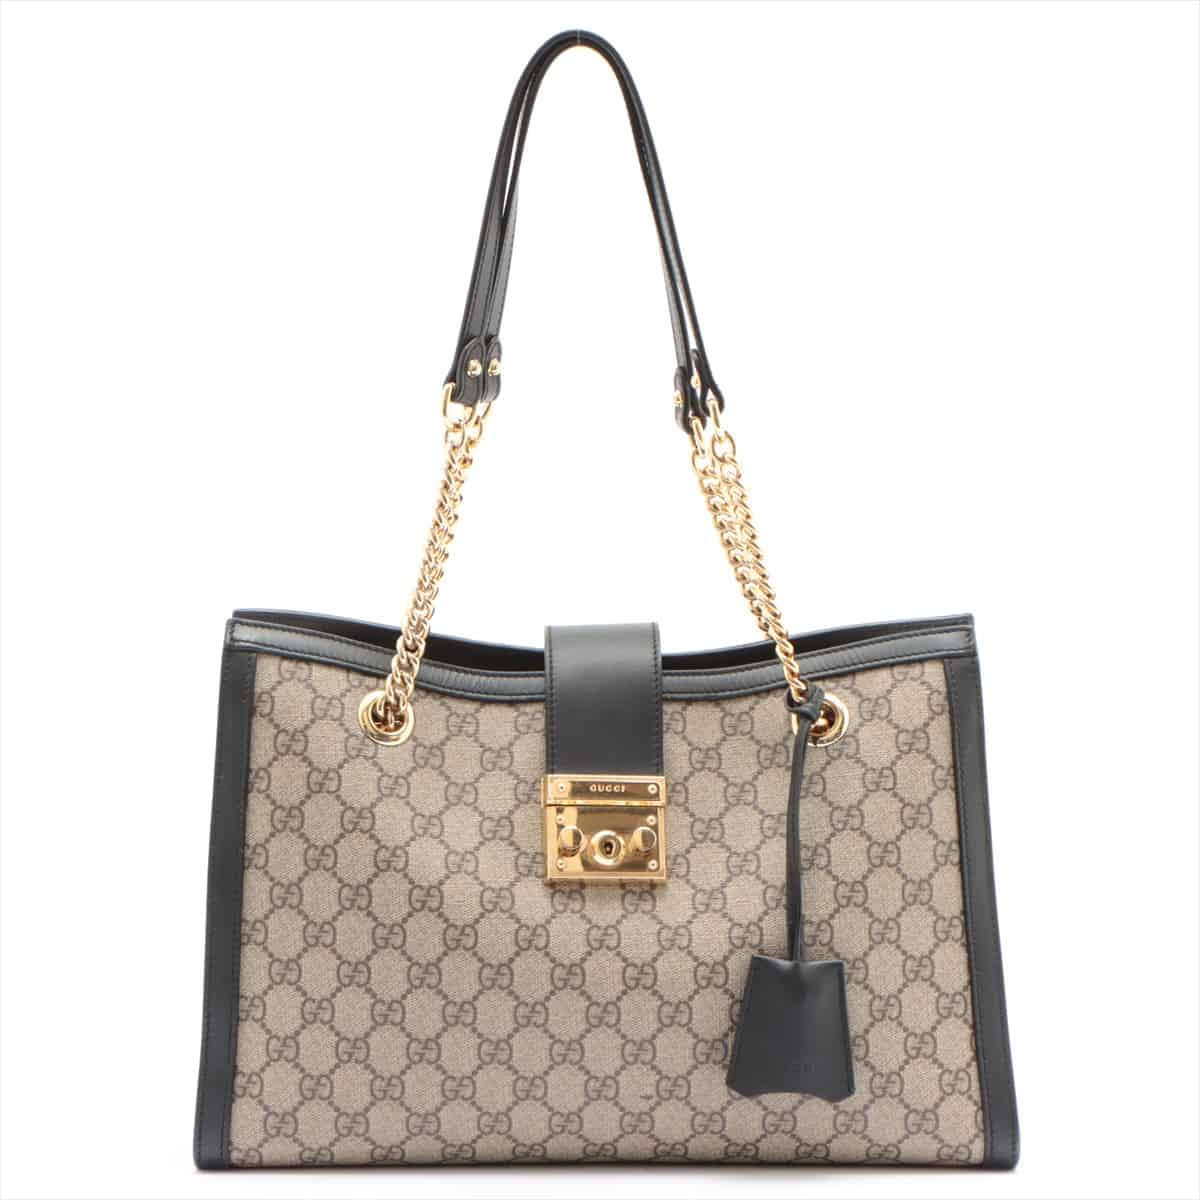 Gucci GG Supreme Chain tote bag black x beige 479197